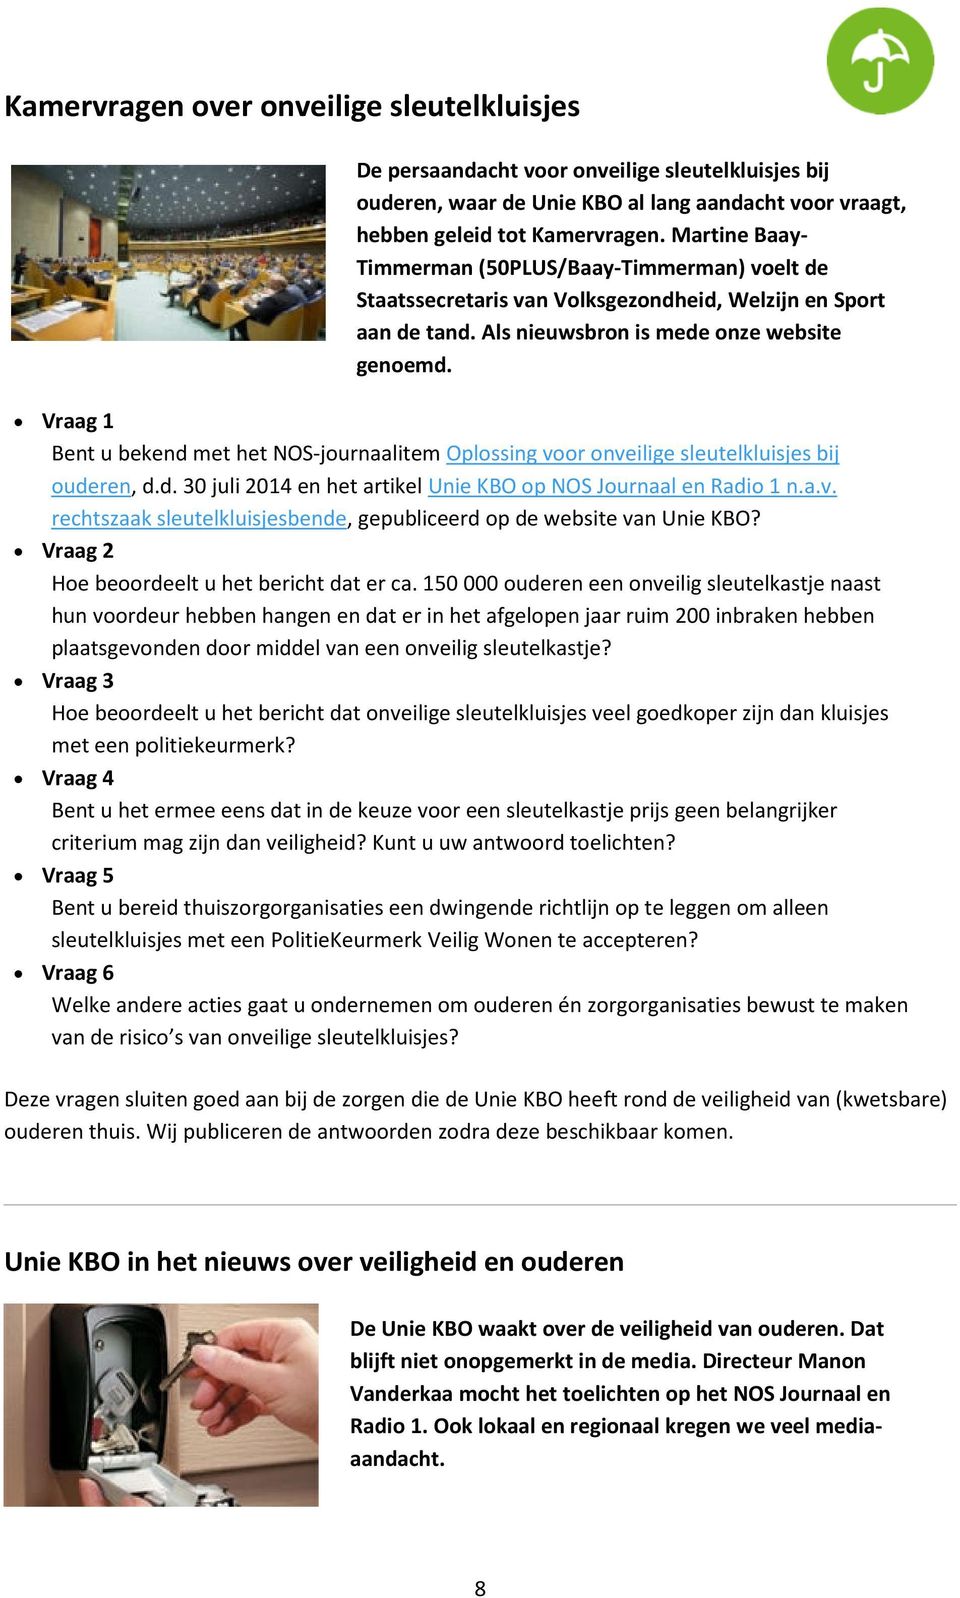 Vraag 1 Bent u bekend met het NOS-journaalitem Oplossing voor onveilige sleutelkluisjes bij ouderen, d.d. 30 juli 2014 en het artikel Unie KBO op NOS Journaal en Radio 1 n.a.v. rechtszaak sleutelkluisjesbende, gepubliceerd op de website van Unie KBO?